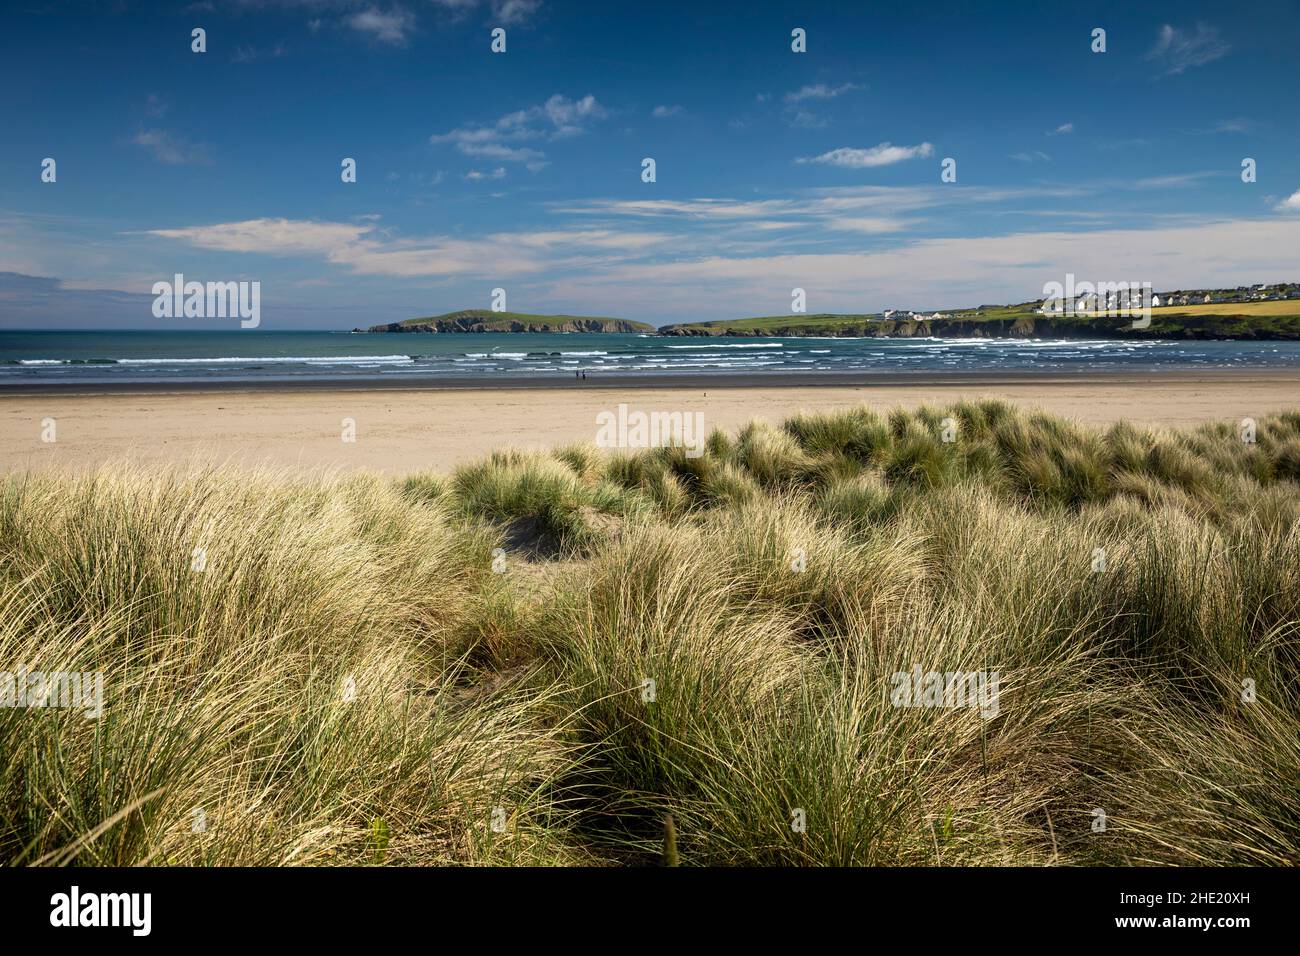 Royaume-Uni, pays de Galles, Pembrokeshire, Poppit Sands, dunes sur l'estuaire de la rivière Teifi Banque D'Images